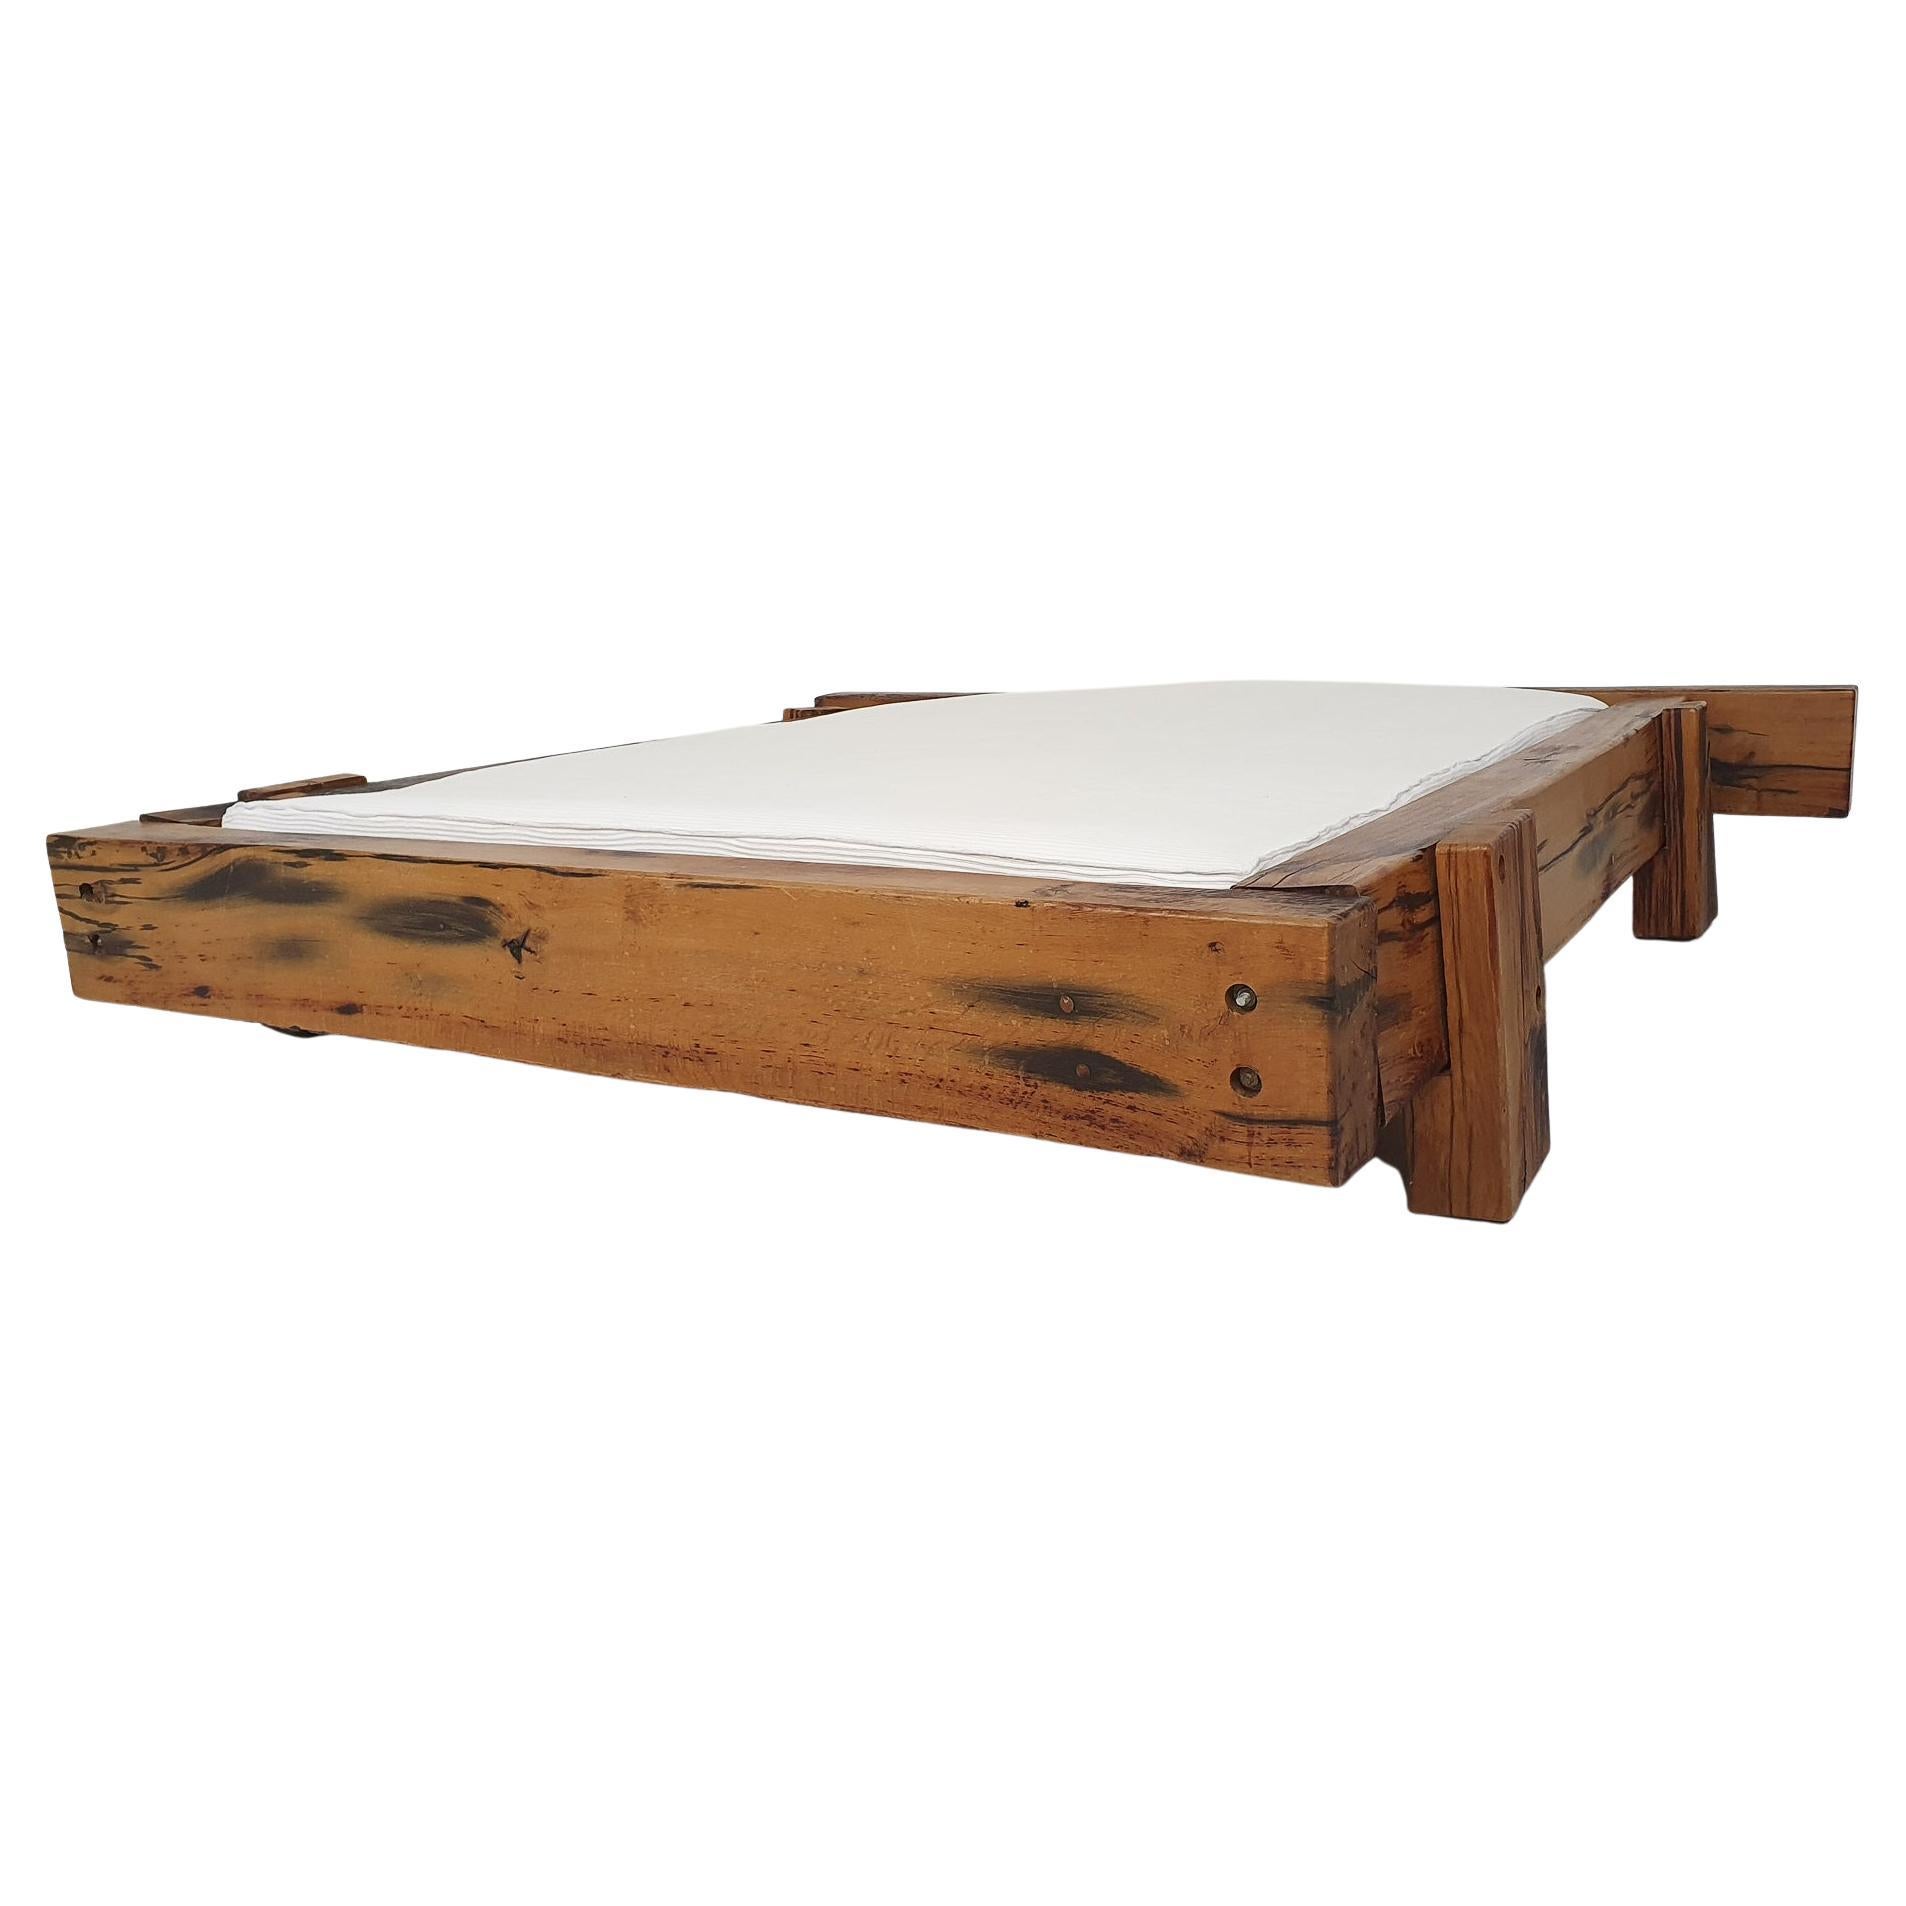 Sehr schönes Bett aus schweren Massivholzstäben, die mit Bolzen befestigt sind.
Das Holz hat eine schöne Patina, an einigen Stellen ist das Holz rissig, aber das beeinträchtigt nicht die Struktur, es macht es nur noch schöner, als käme es direkt